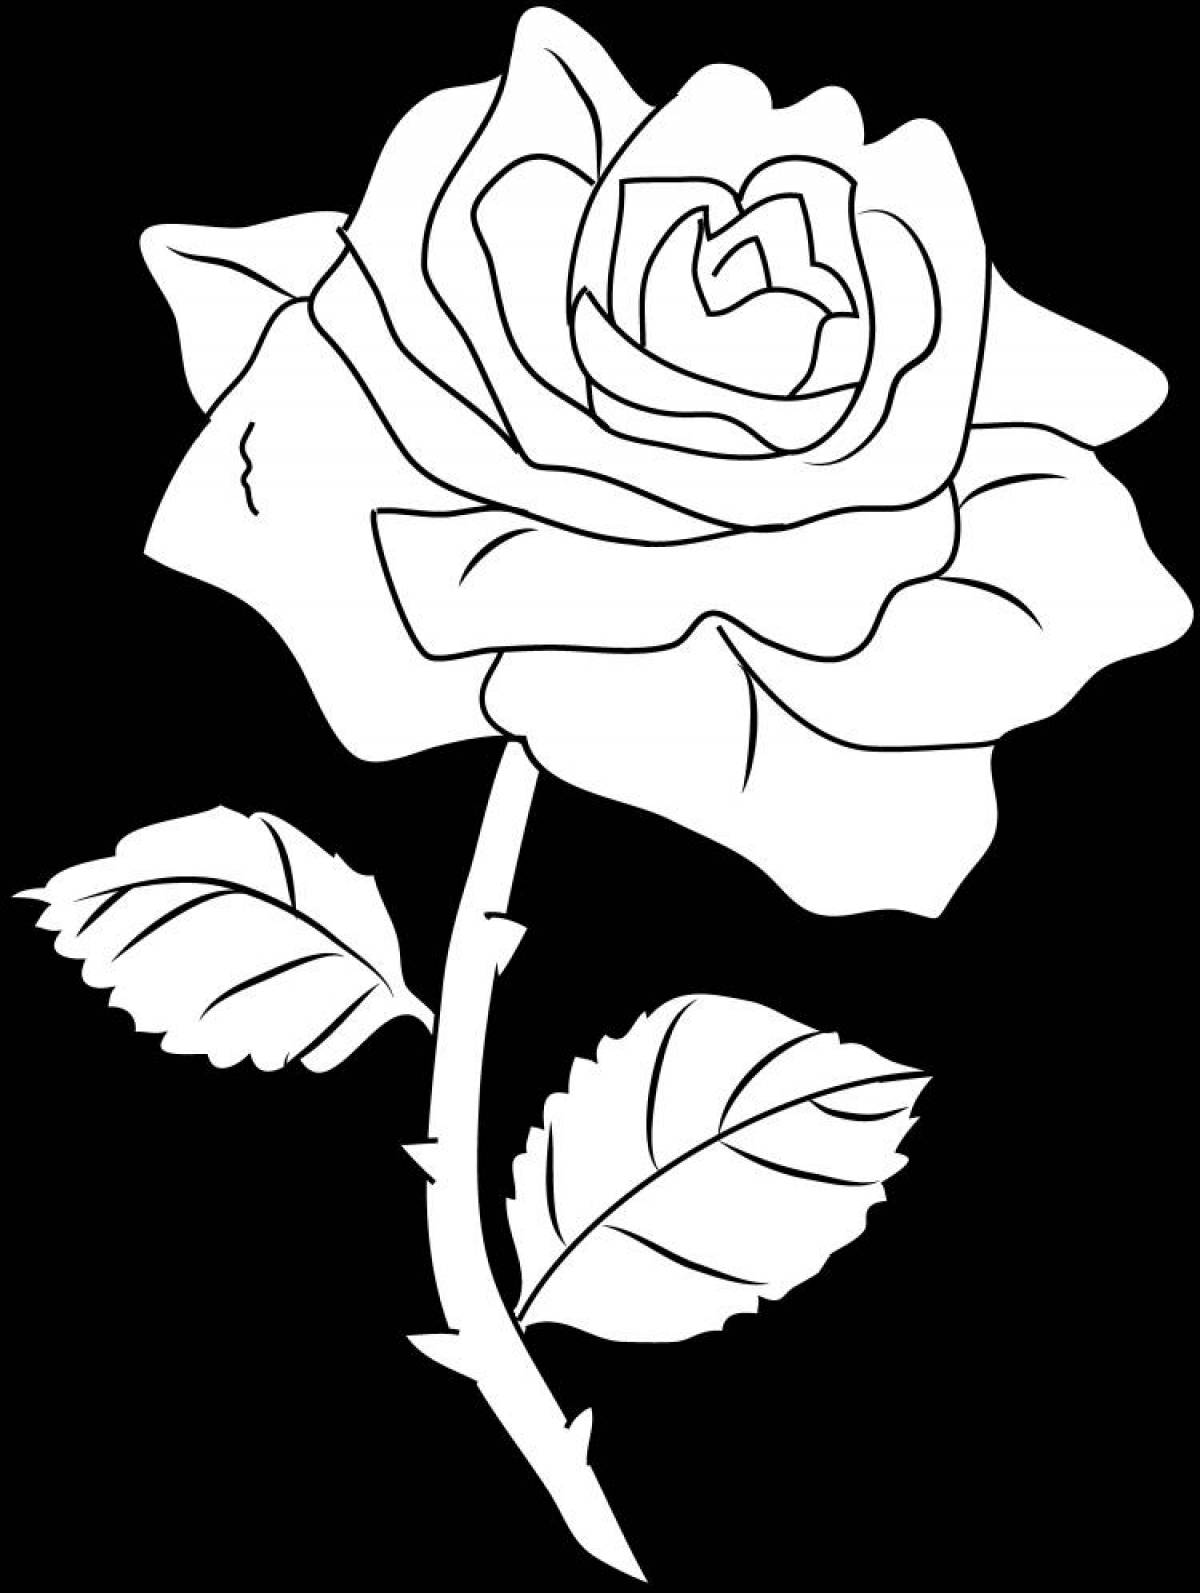 Flowering rose coloring book